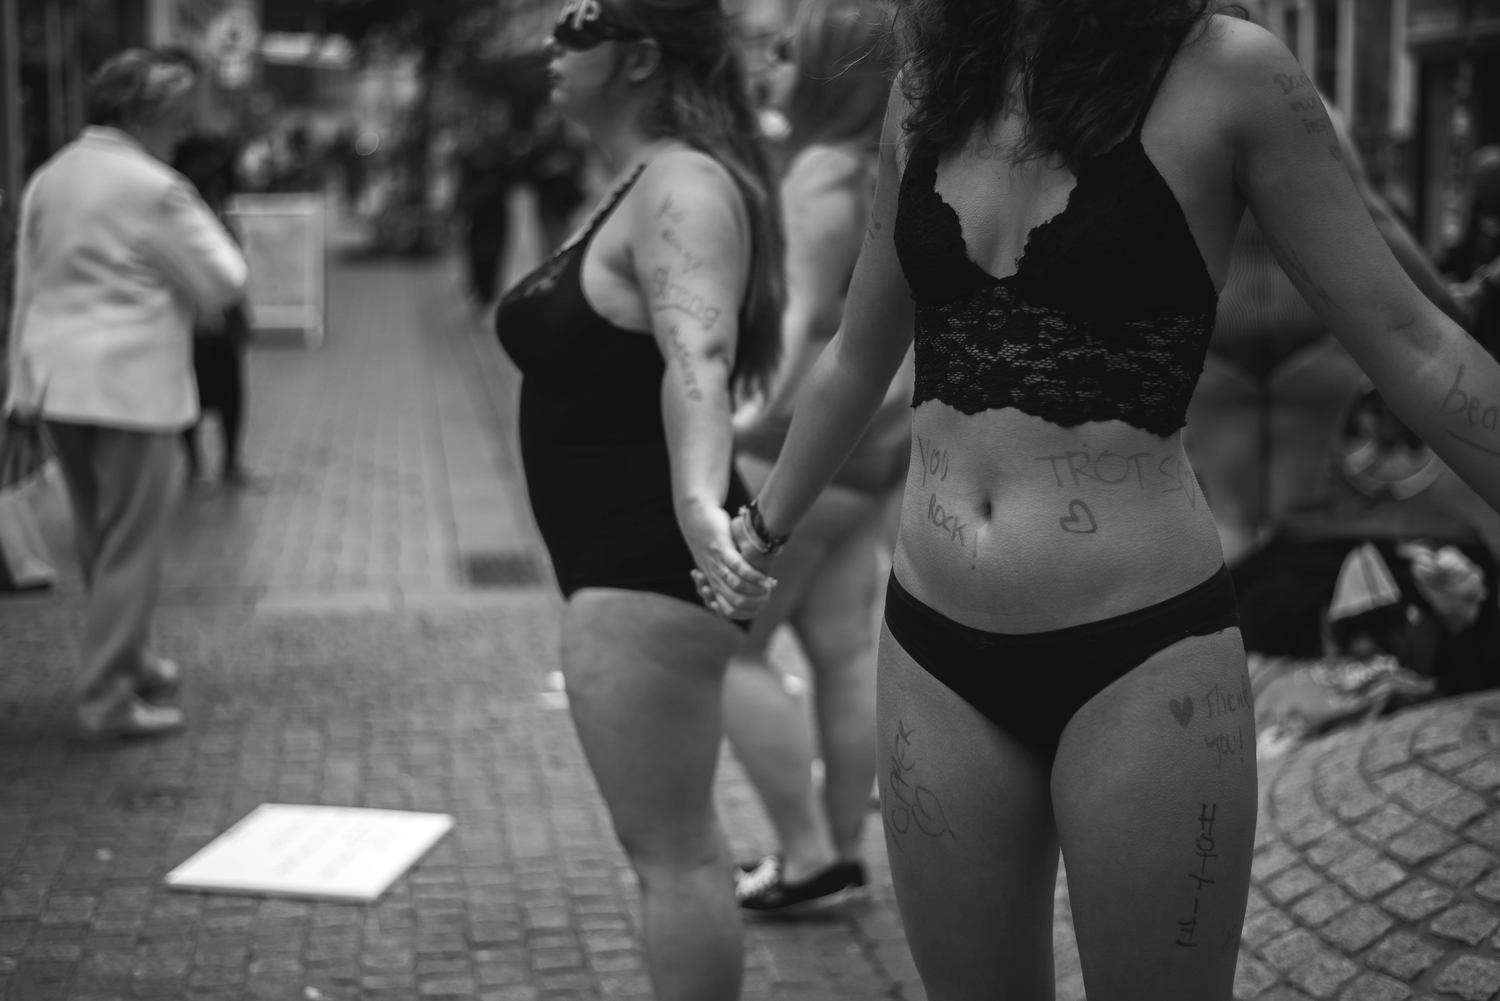 Vrouw in lingerie op straat tijdens protest